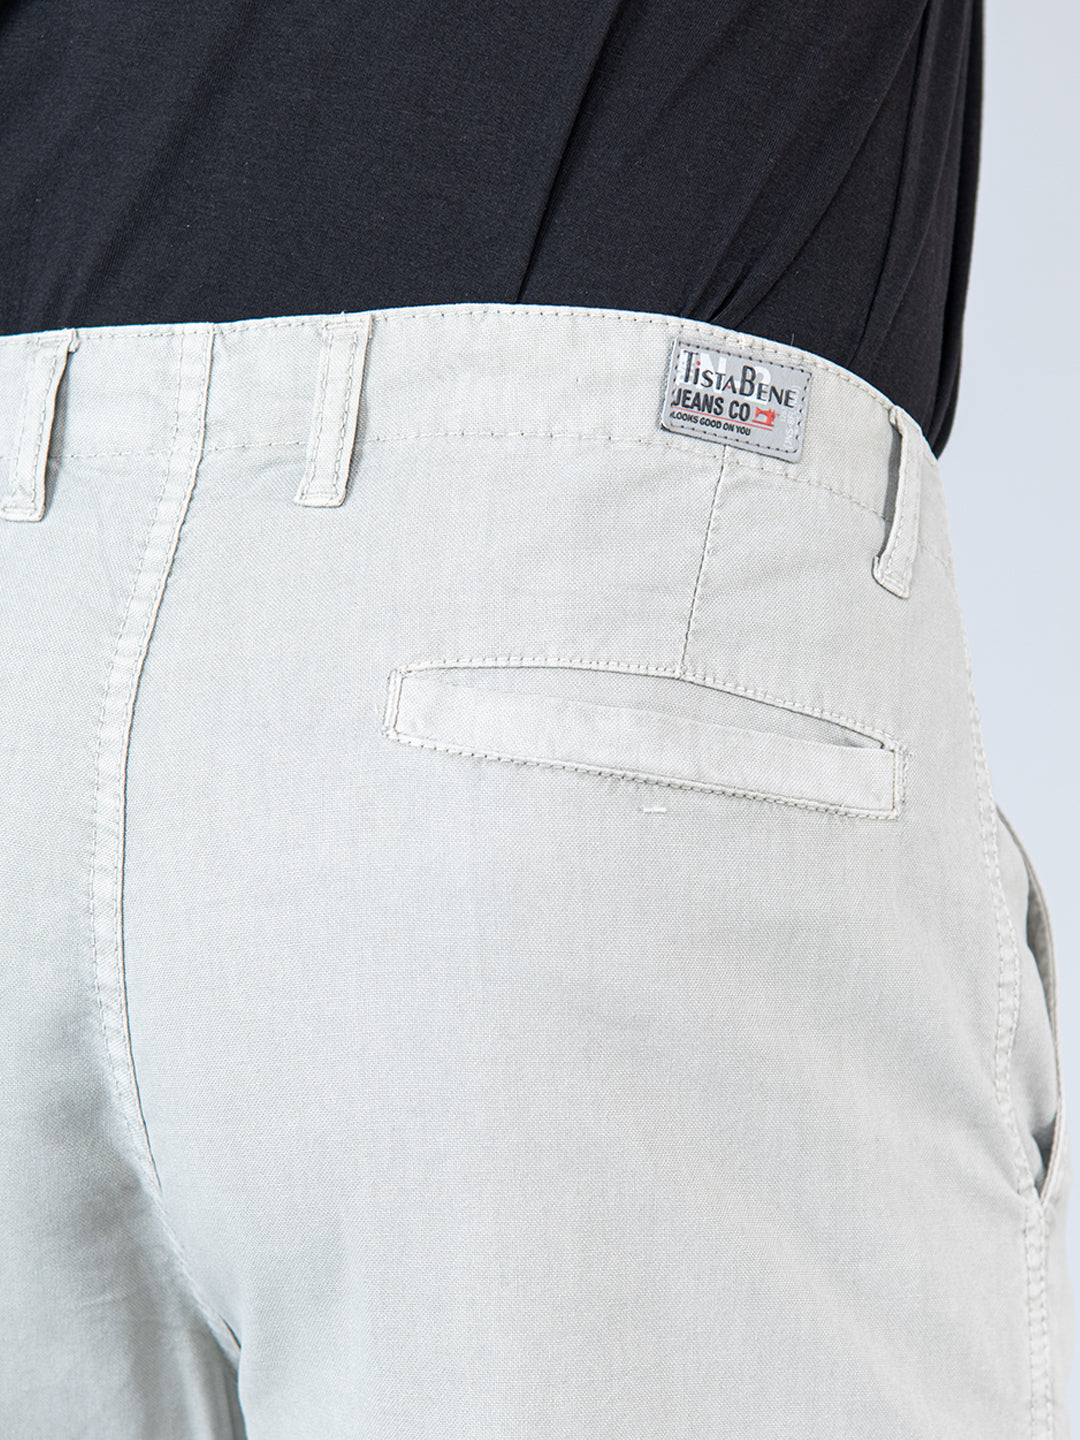 Buy White Trousers  Pants for Men by ECKO UNLTD Online  Ajiocom